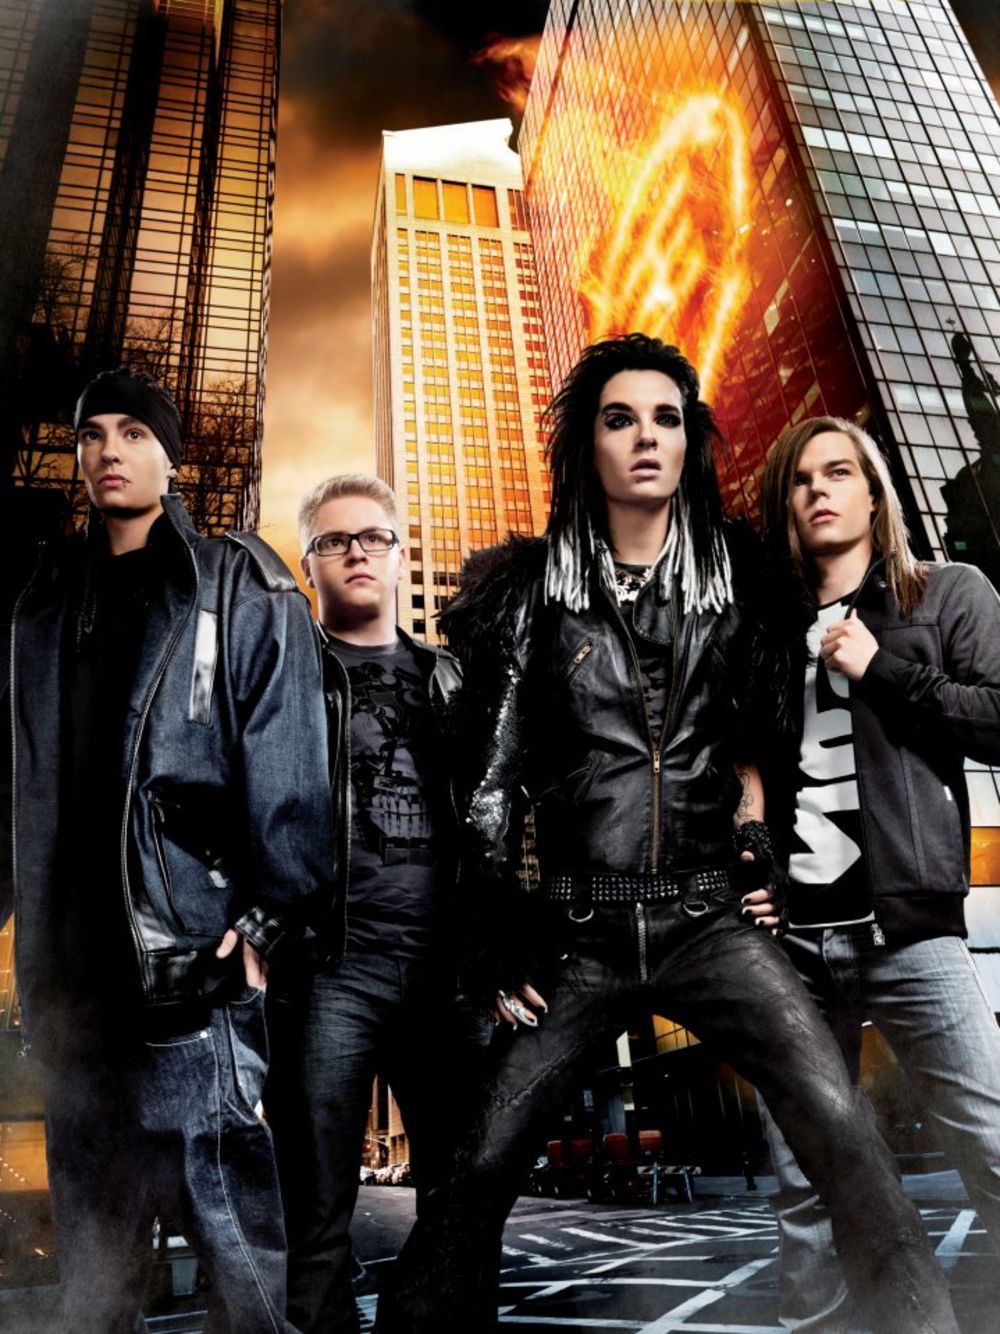 Nemački tinejdž bend, Tokio Hotel nastupiće u Beogradskoj areni 28. marta. Turneju pod nazivom Welcome to Humanoid City, u okviru koje će posetiti 32 grada, započeli su 22. februara koncertom u Luksemburgu i završiće je koncertom u Parizu 14. aprila.